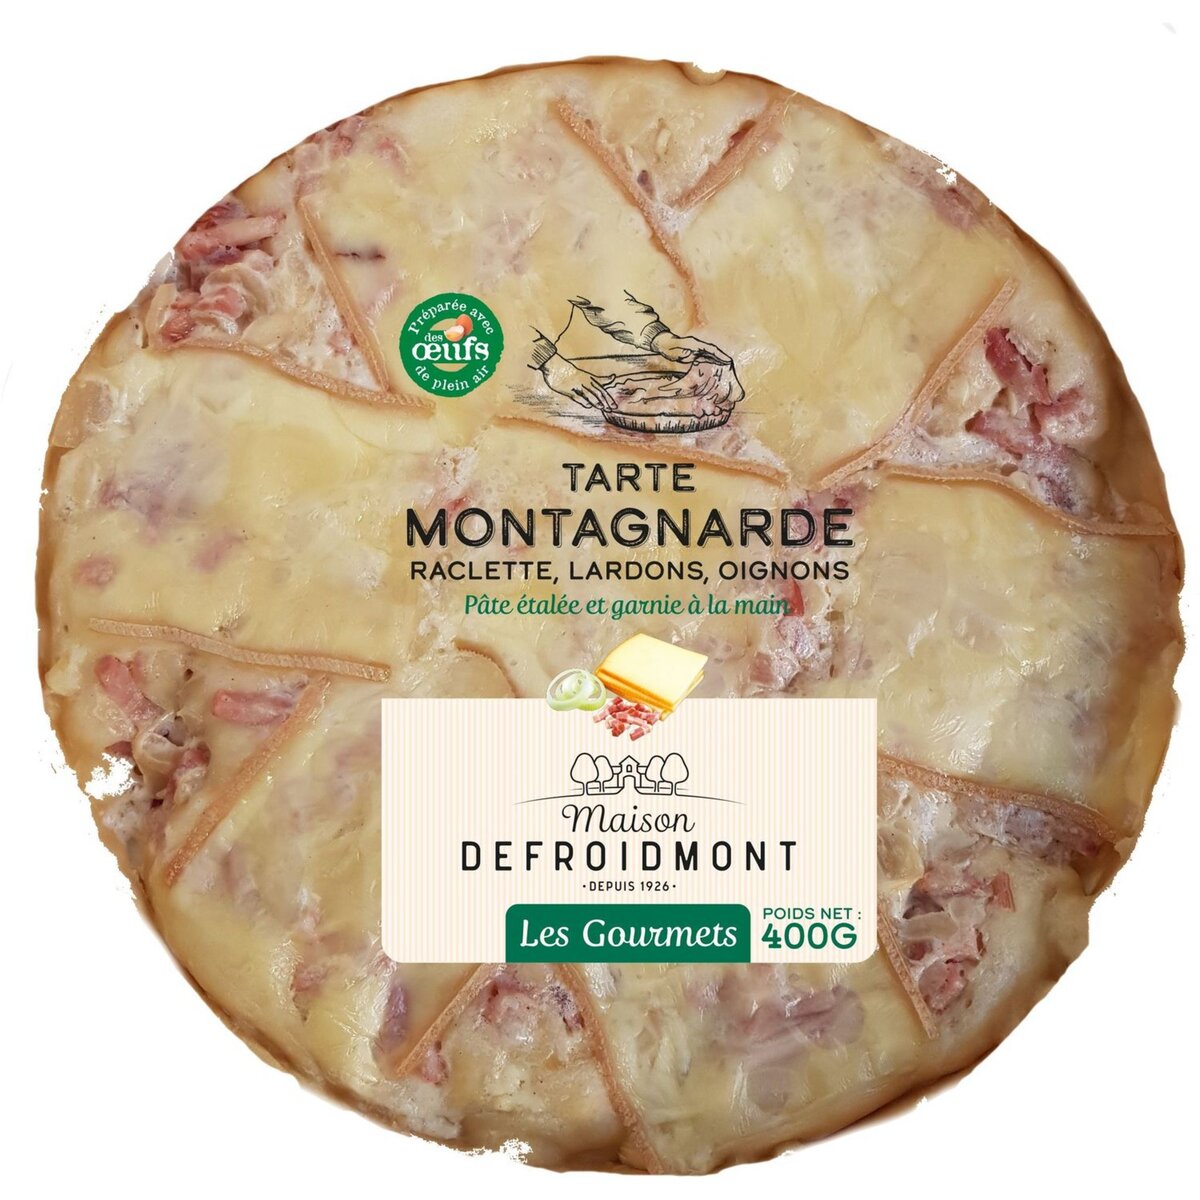 DEFROIDMONT Maison Defroidmont Tarte montagnarde raclette lardons oignons 400g 400g